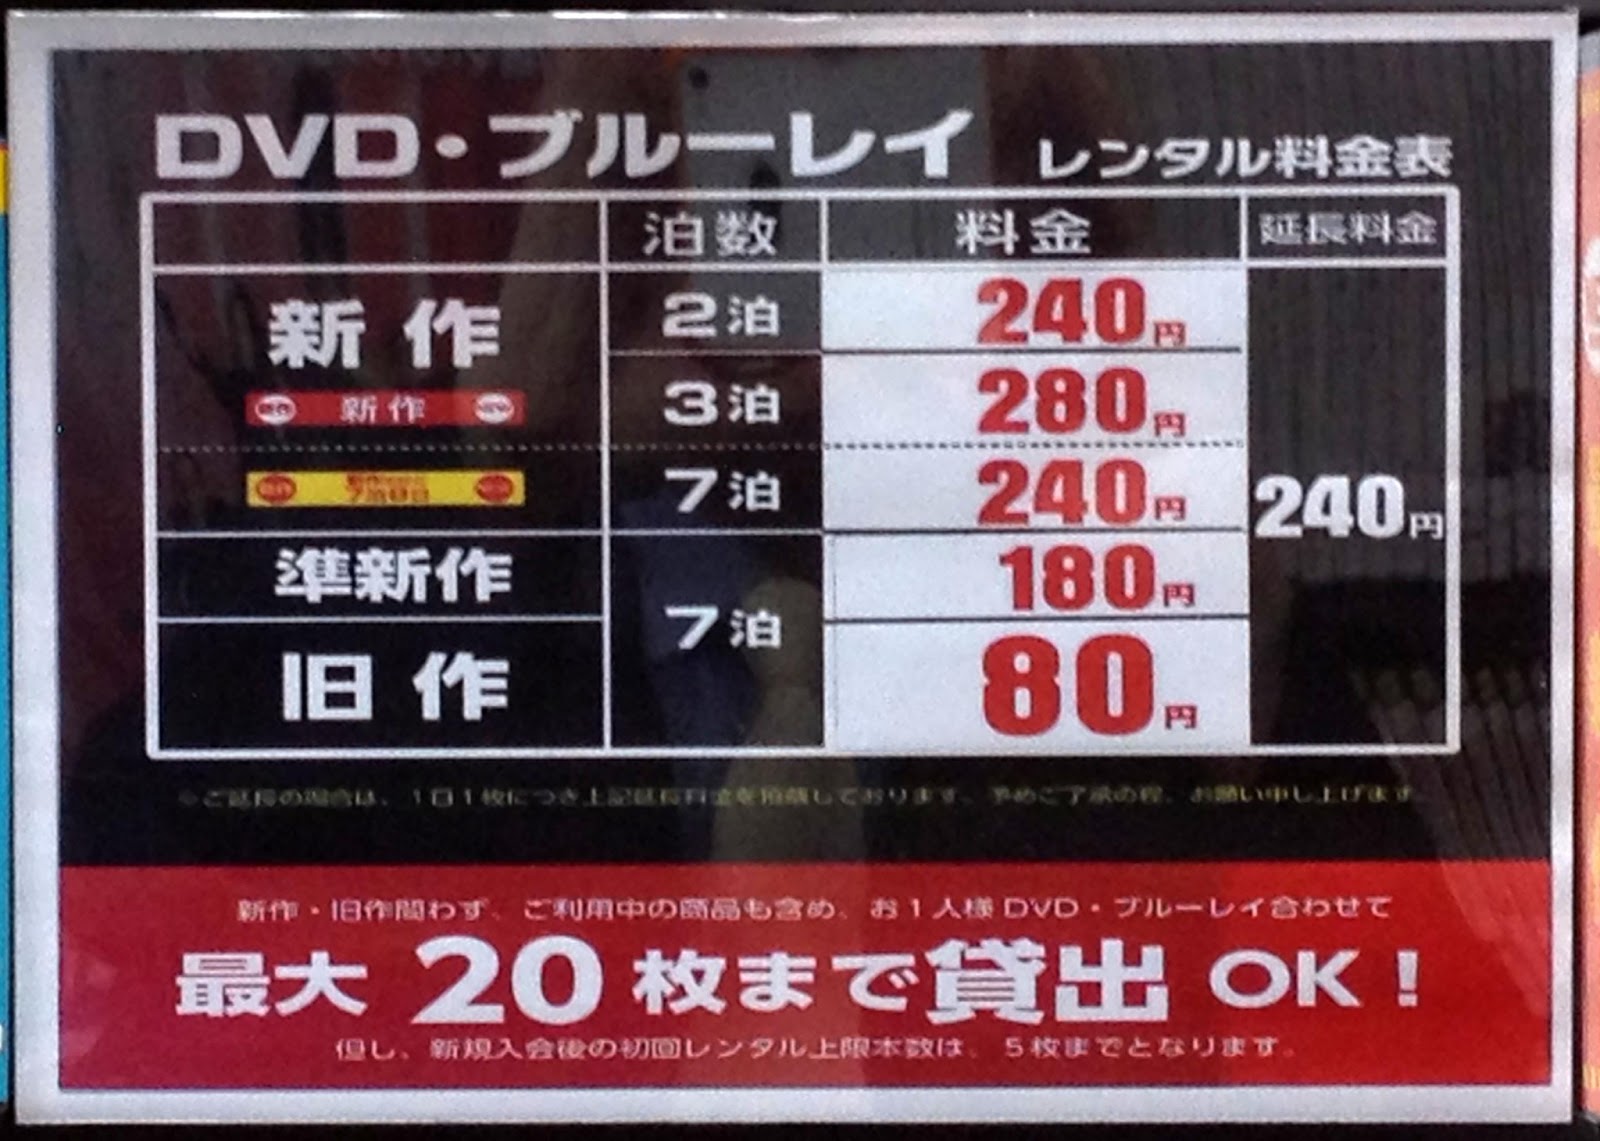 渋谷はdvdレンタル80円 Geo ゲオ とtsutaya ツタヤ の価格比較 楽しいことトコトン比較する日々